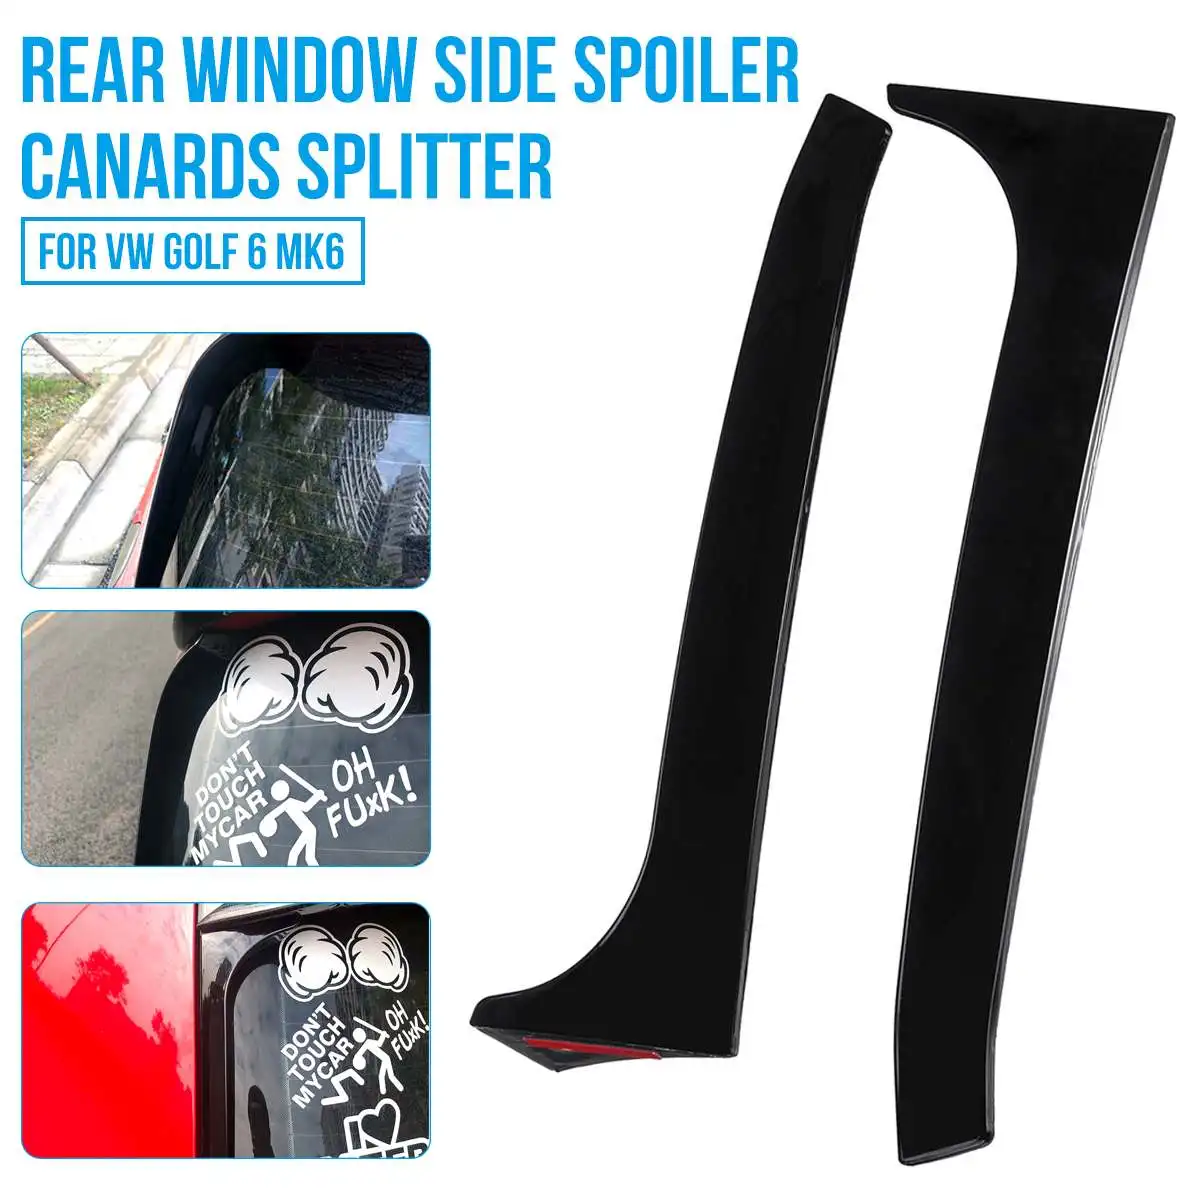 2Pcs Car Rear Window Side Spoiler Wing Canard Canards Splitter For VW Golf 6 MK6 GTI/GTR/GTD 08-13 Front Headlight Eyelid Trims